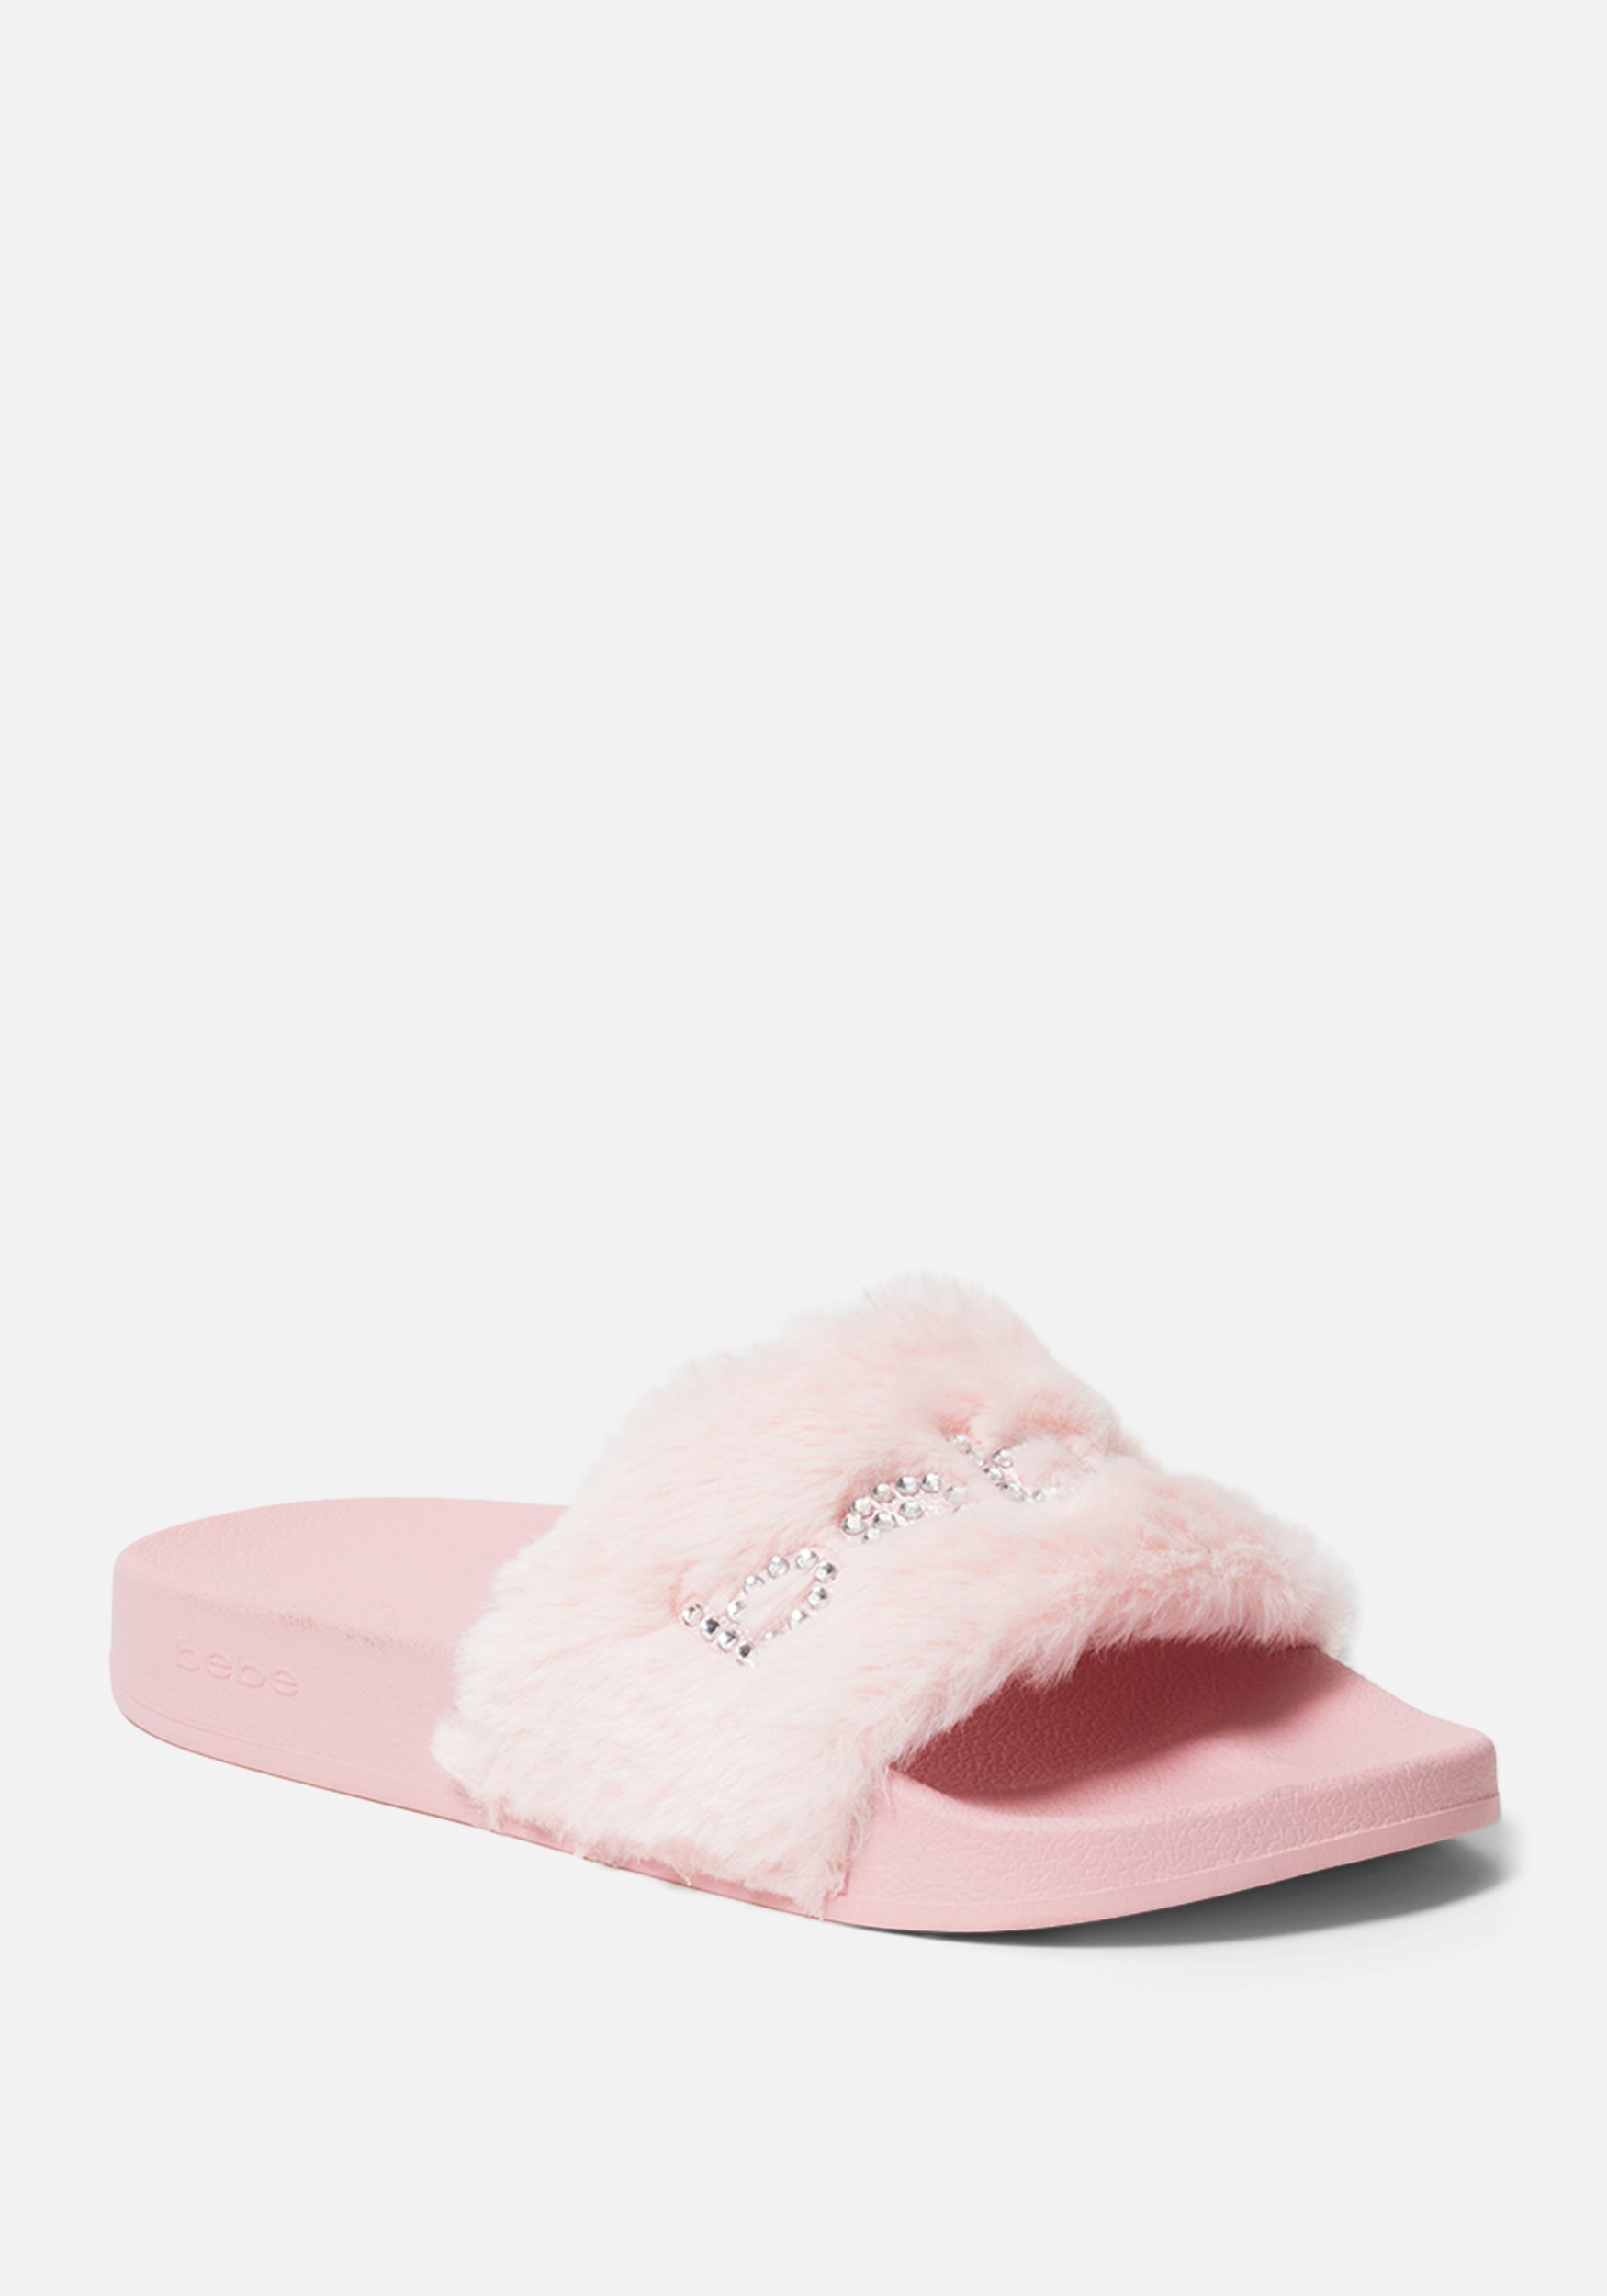 Bebe Women's Furiosa Faux Fur Slides Shoe, Size 9 in DUSTY PINK Synthetic